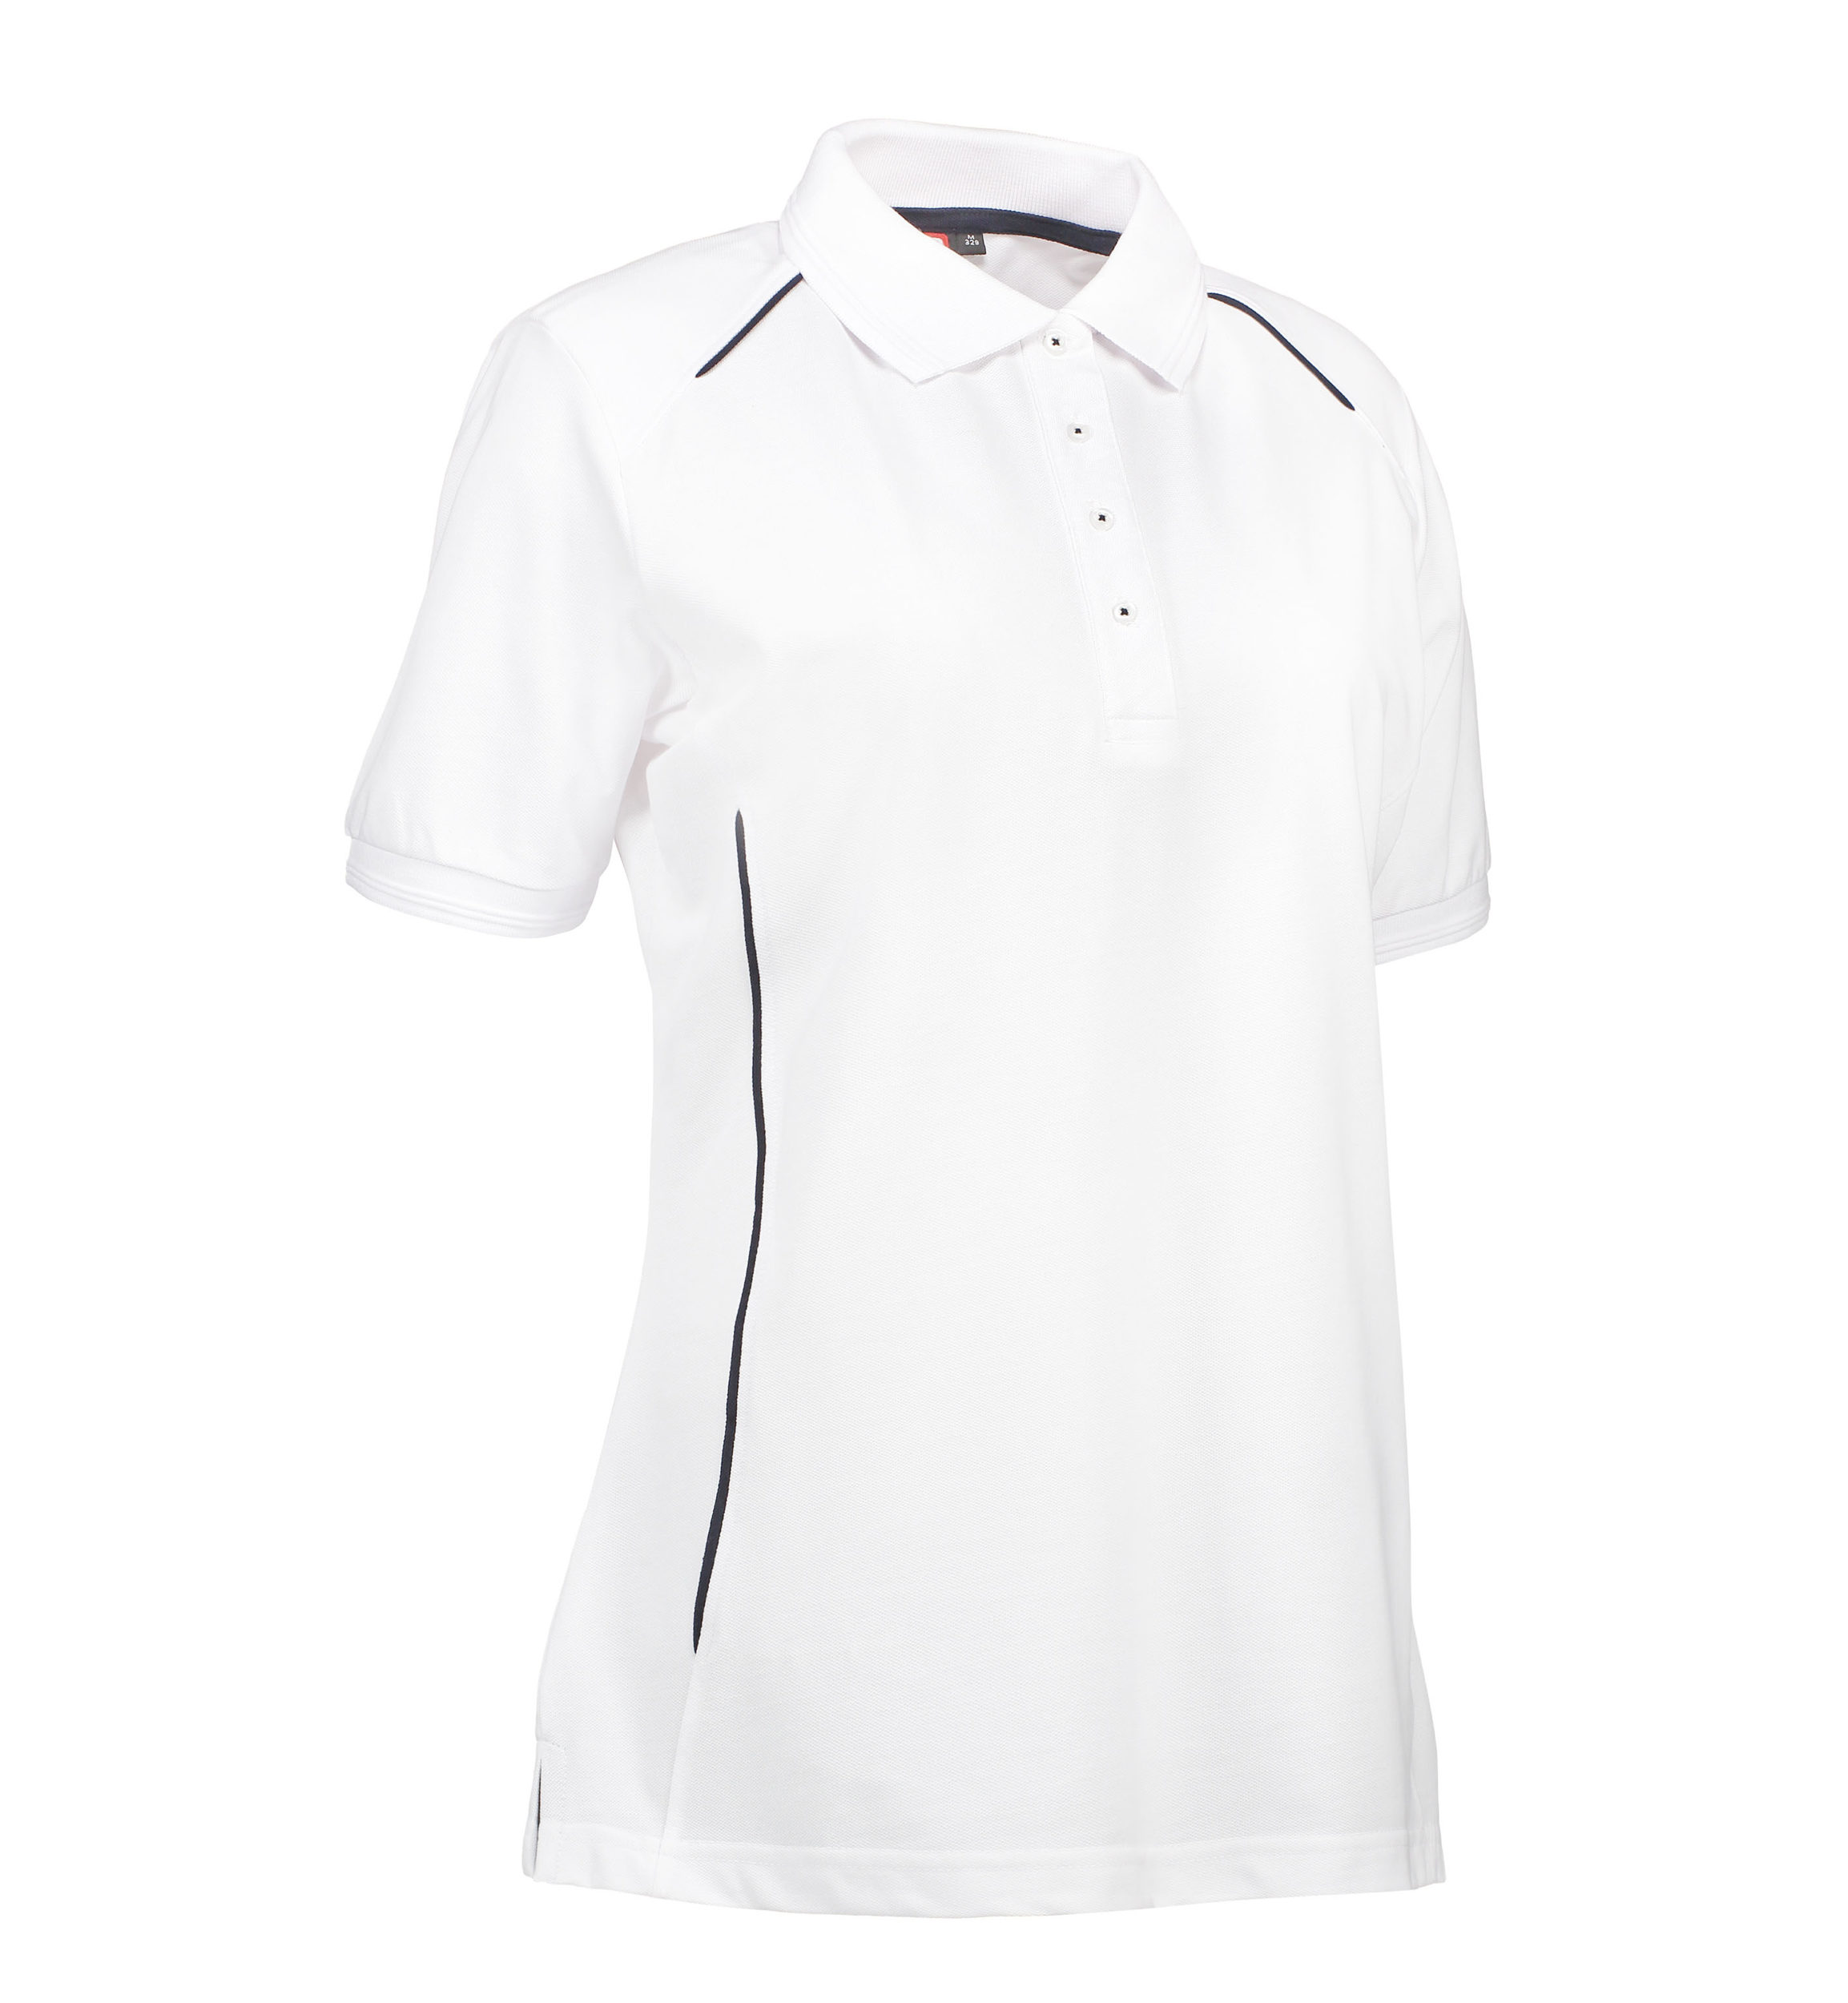 Se Slidstærk polo t-shirt i hvid til damer - 6XL hos Sygeplejebutikken.dk